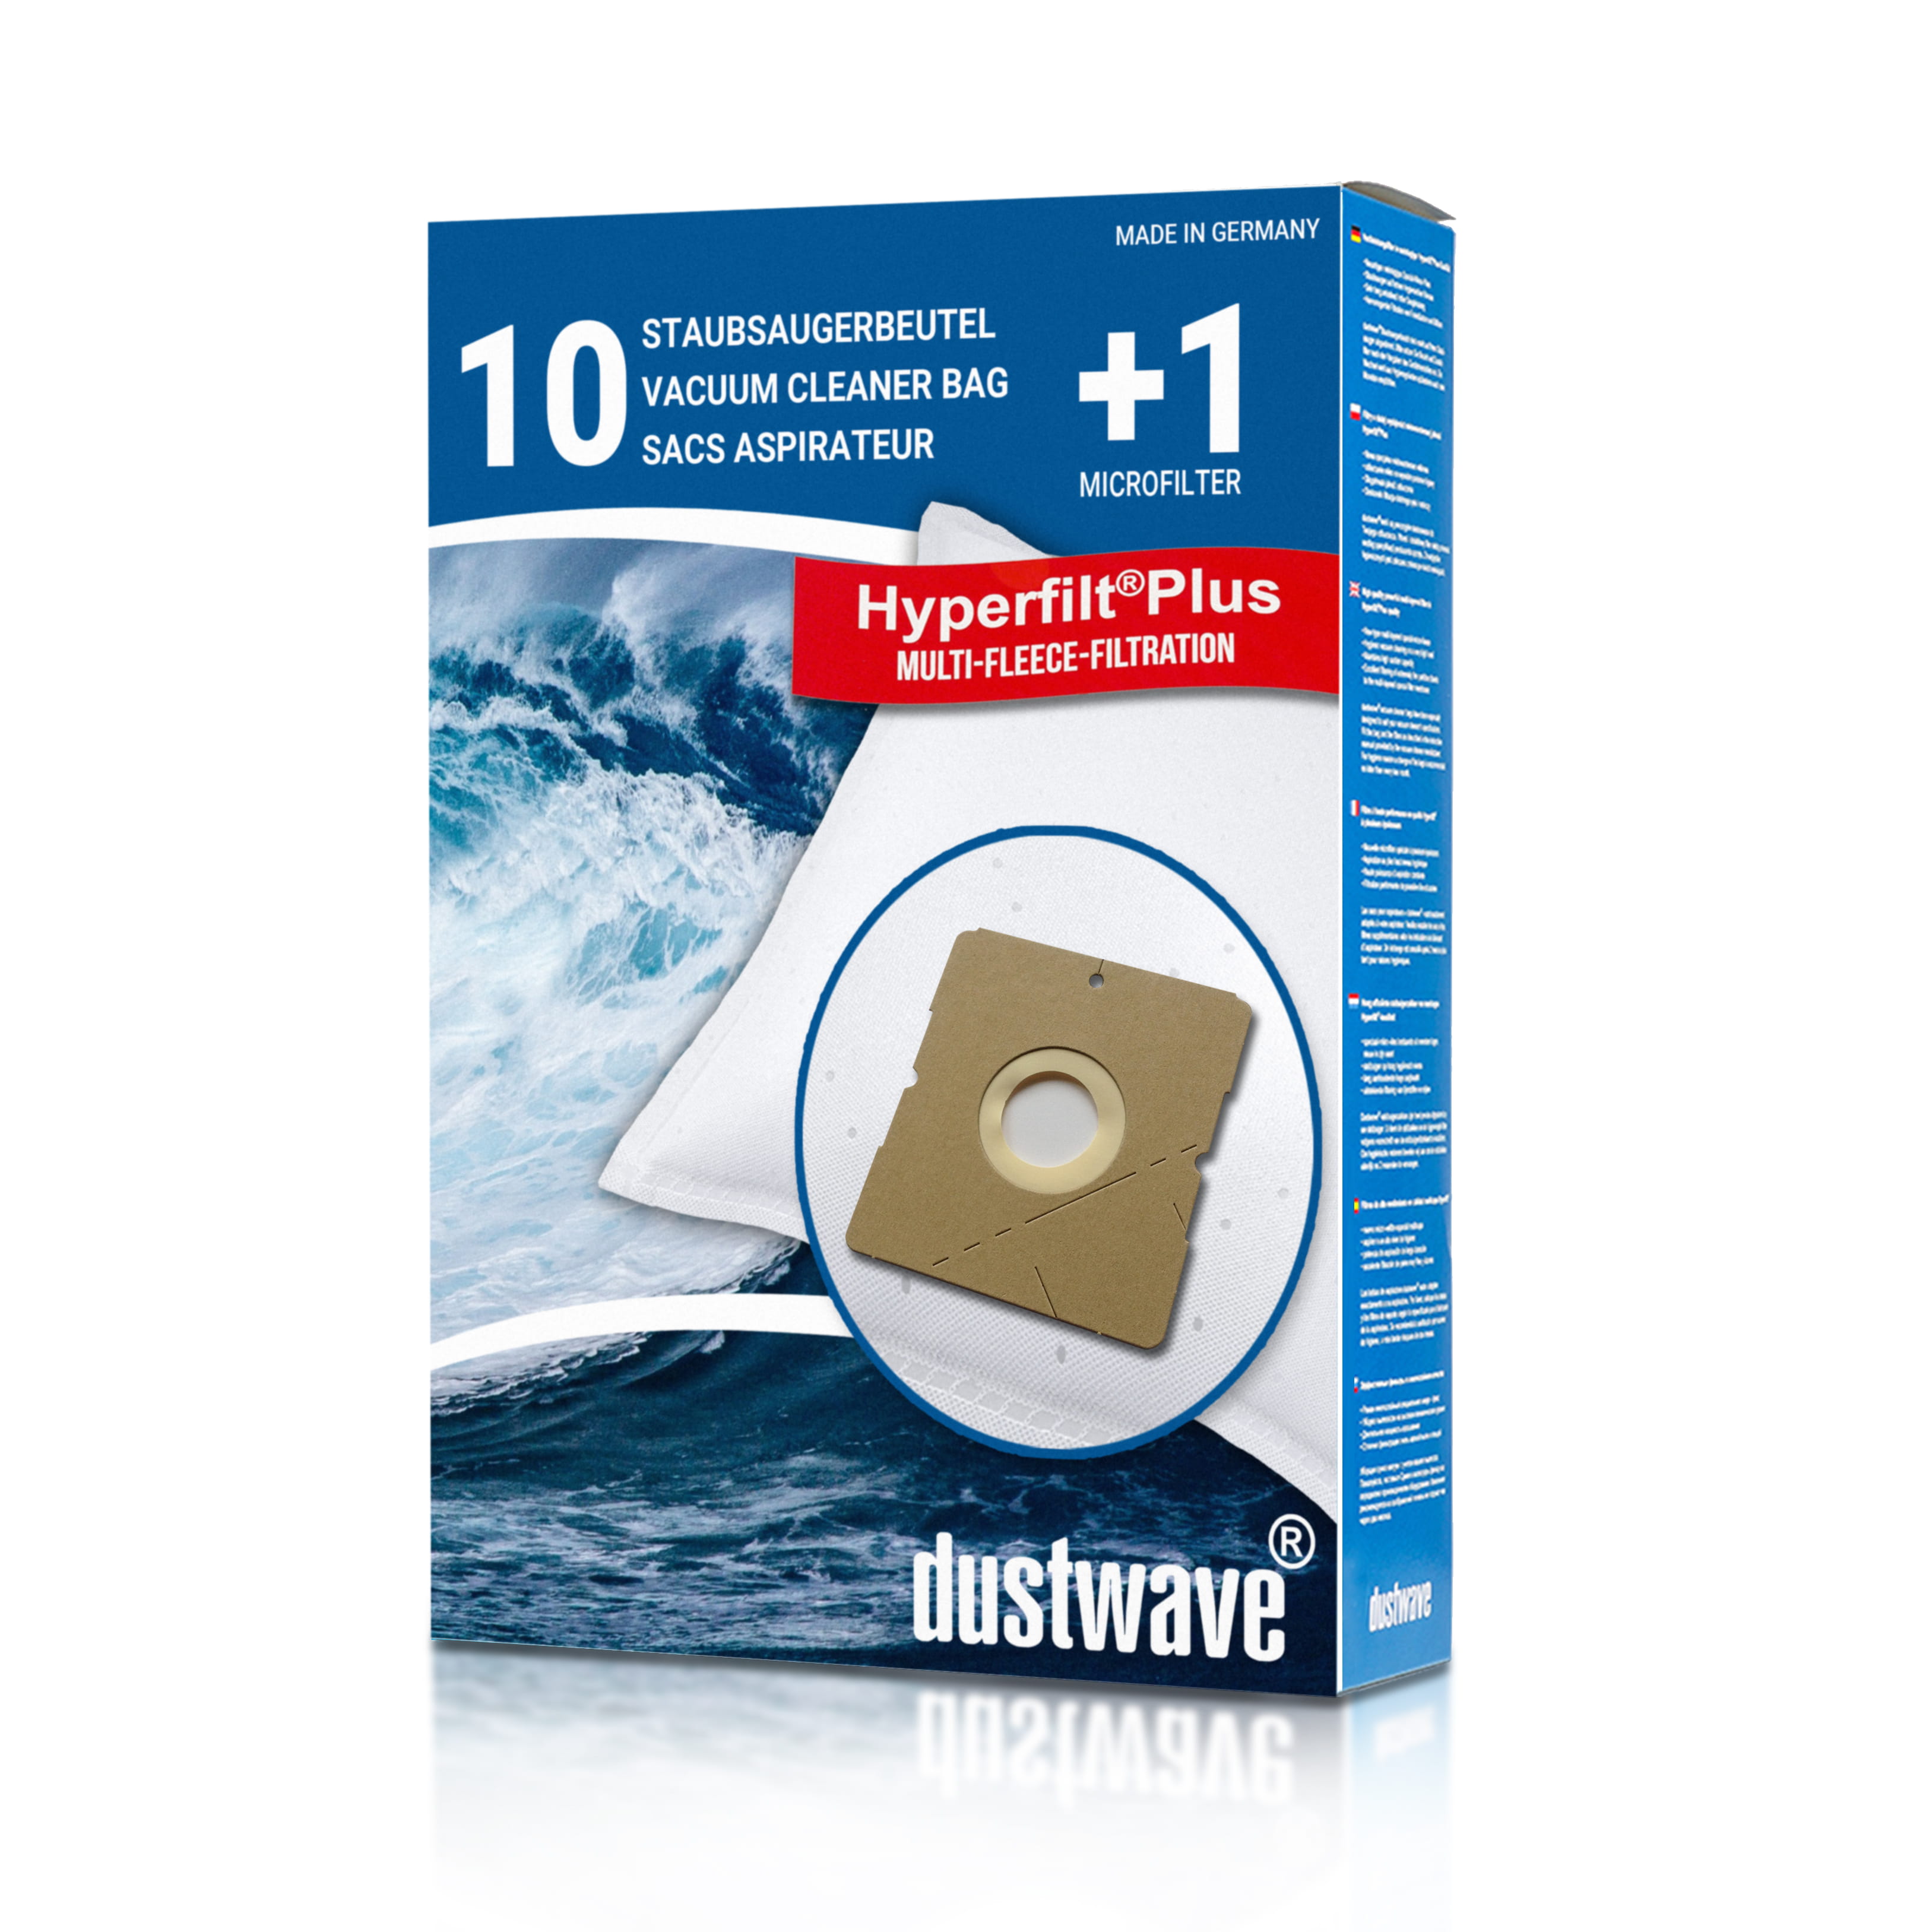 Dustwave® 10 Staubsaugerbeutel für Hoover SX9560 001 AQUAMAS - hocheffizient, mehrlagiges Mikrovlies mit Hygieneverschluss - Made in Germany